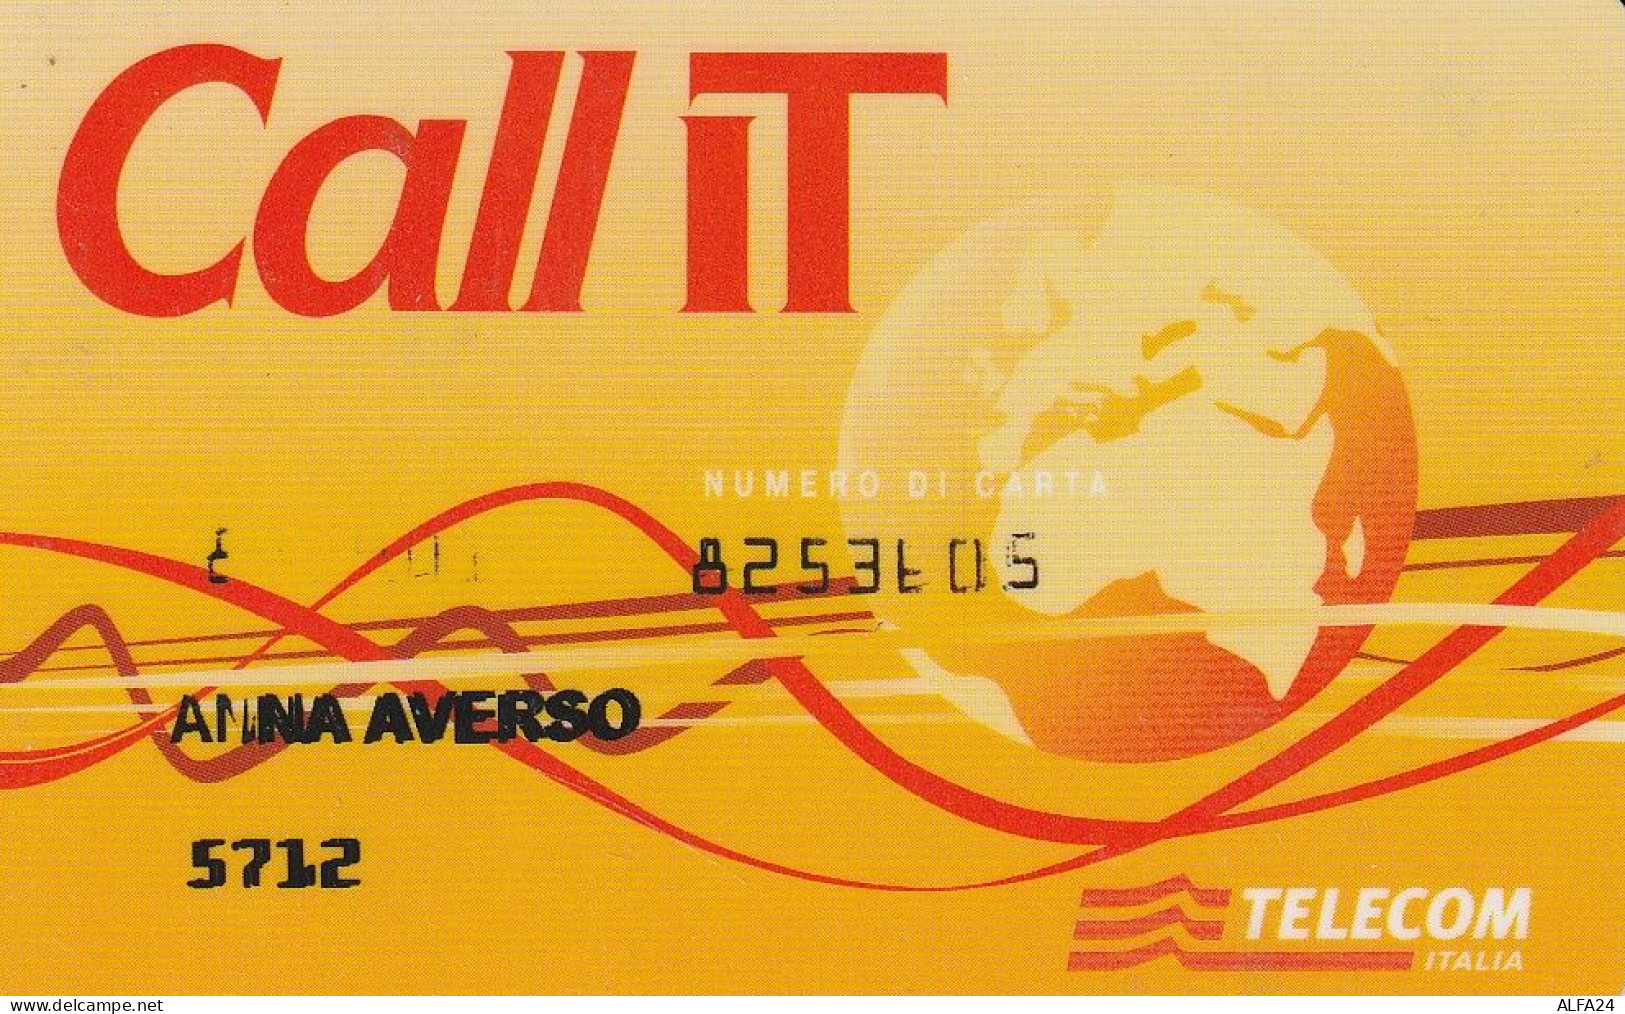 CARTA CREDITO TELECOM CALL IT  (CZ1441 - Sonderzwecke